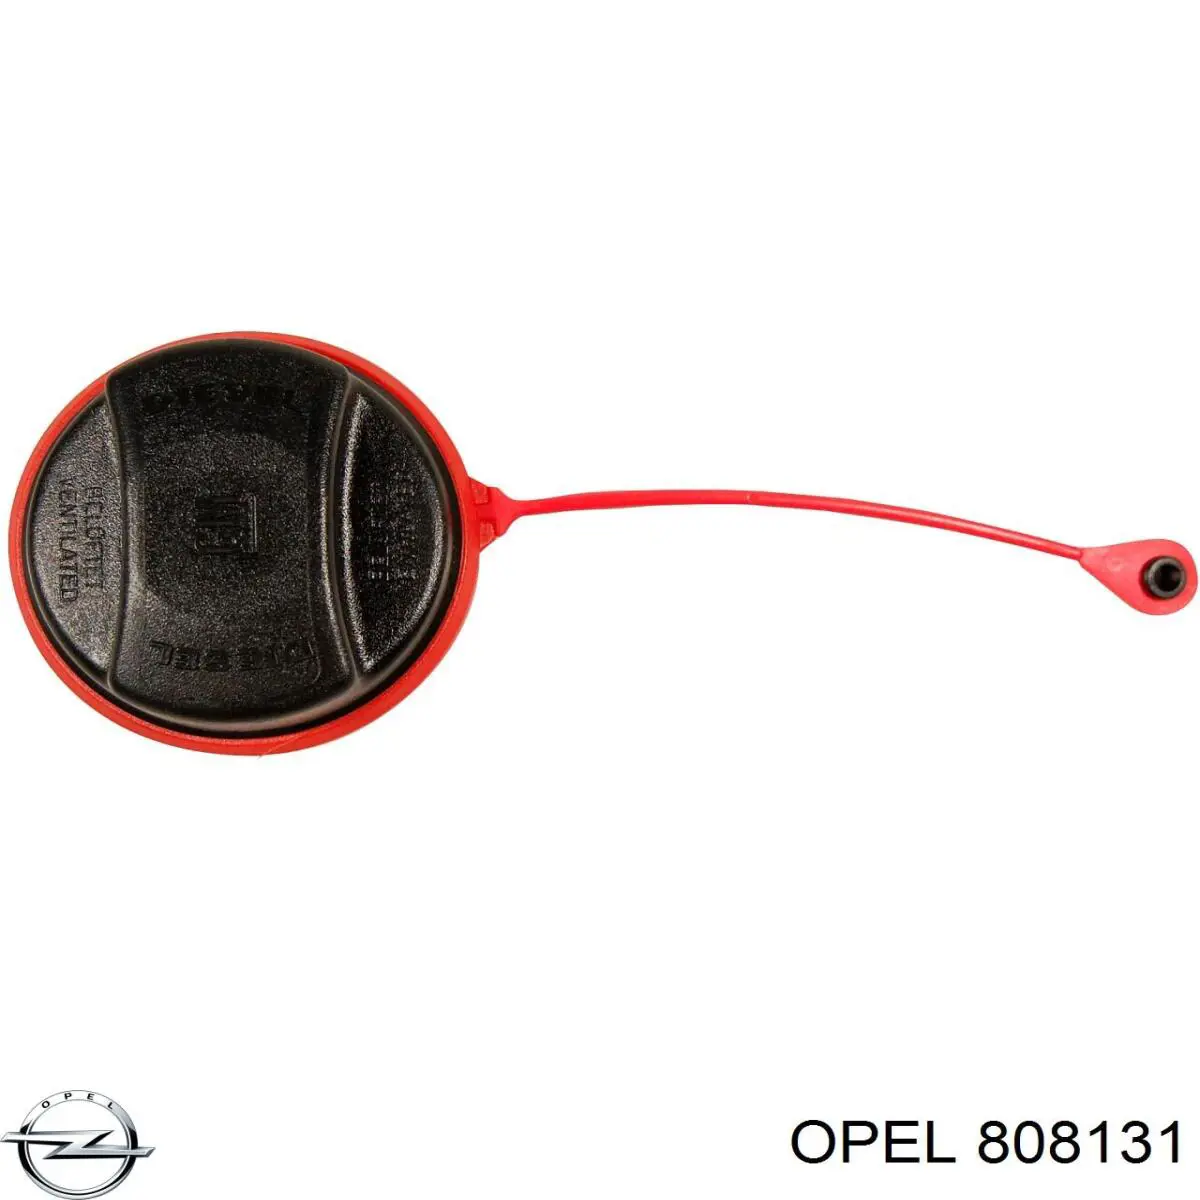 808131 Opel tampa (tampão do tanque de combustível)